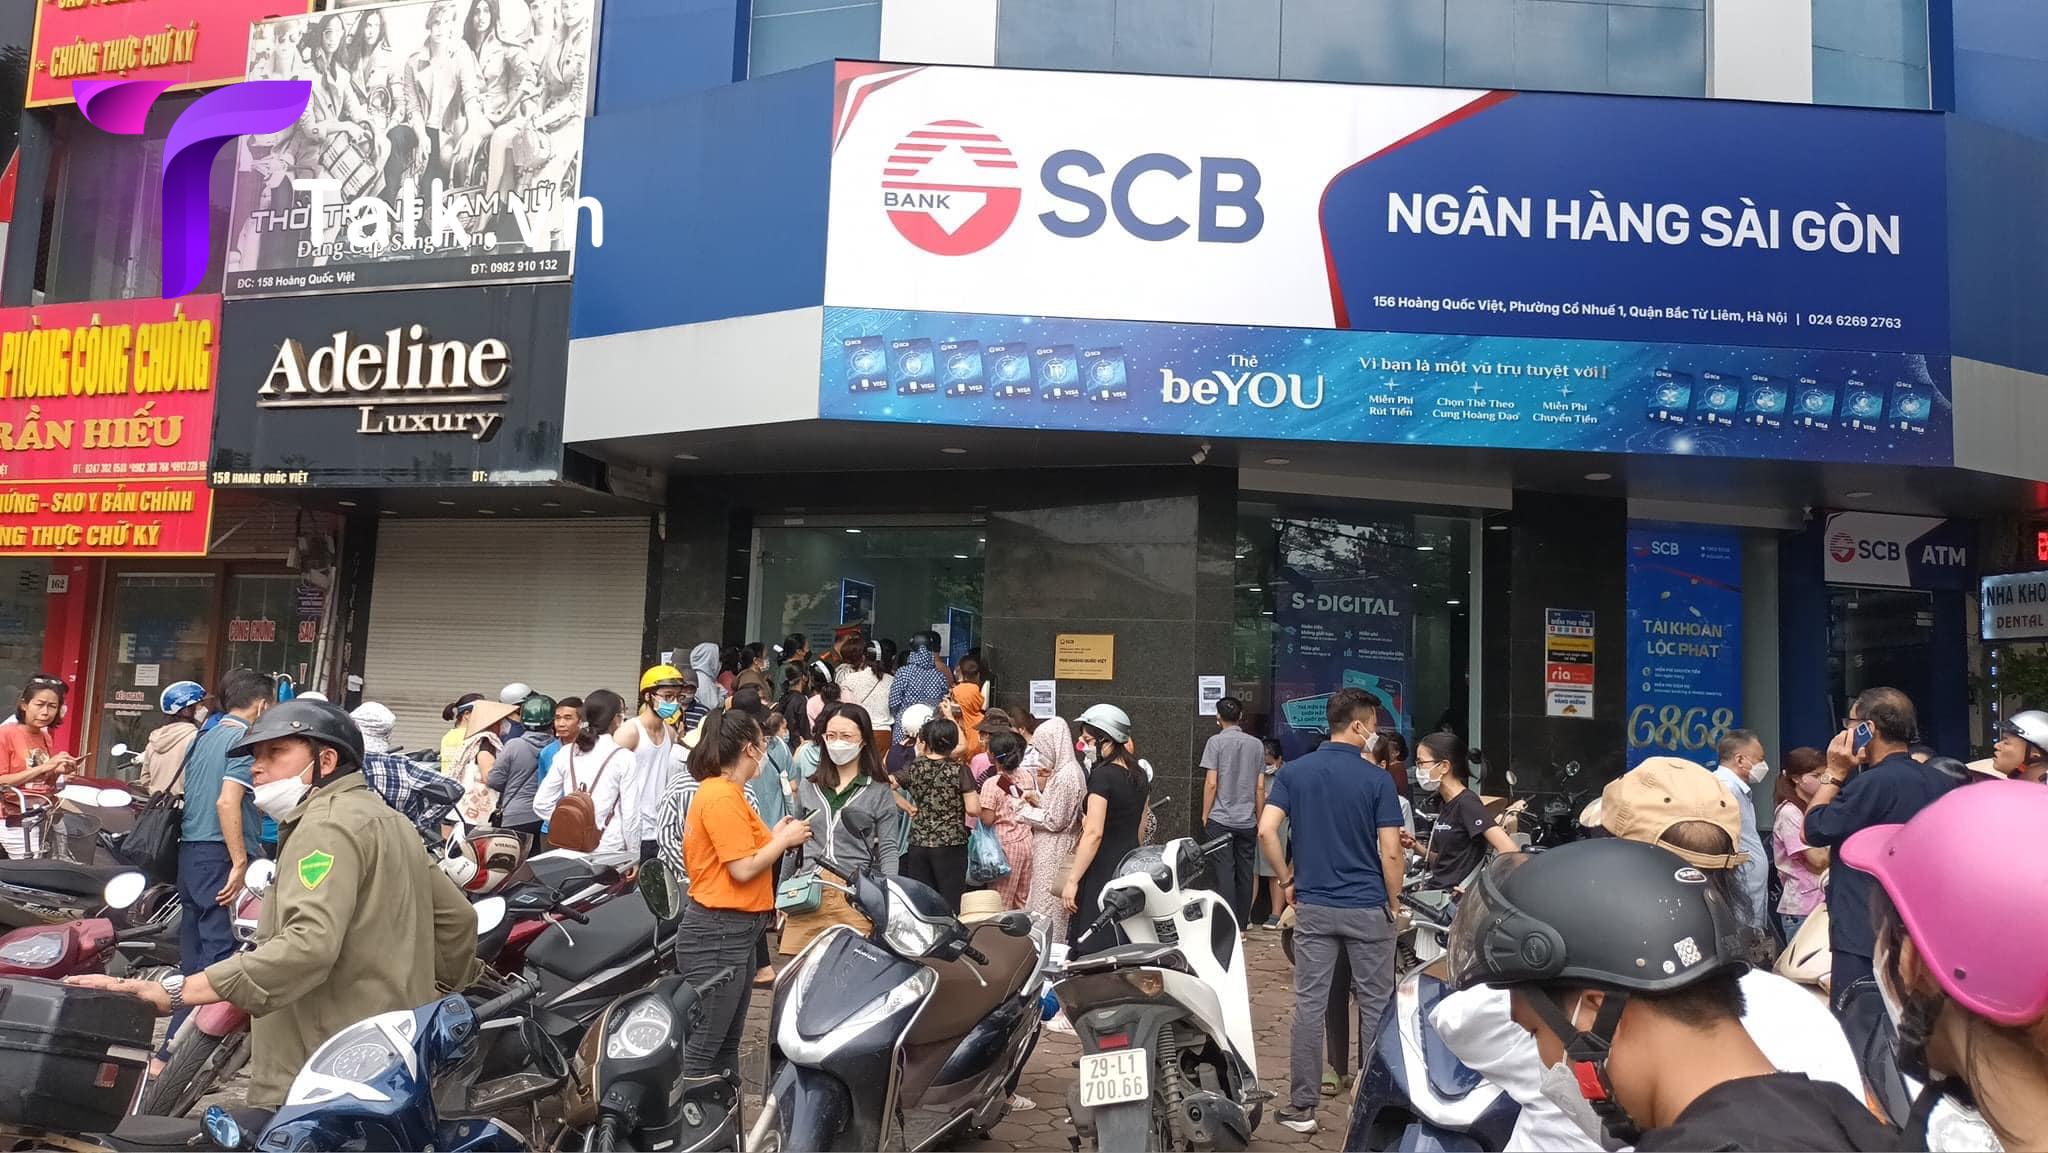 Hàng trăm người xếp hàng trước Ngân Hàng SCB, quận Bắc Từ Liêm, Hà Nội chờ rút tiền vì sợ ngân hàng phá sản. Ảnh: Talk.vn